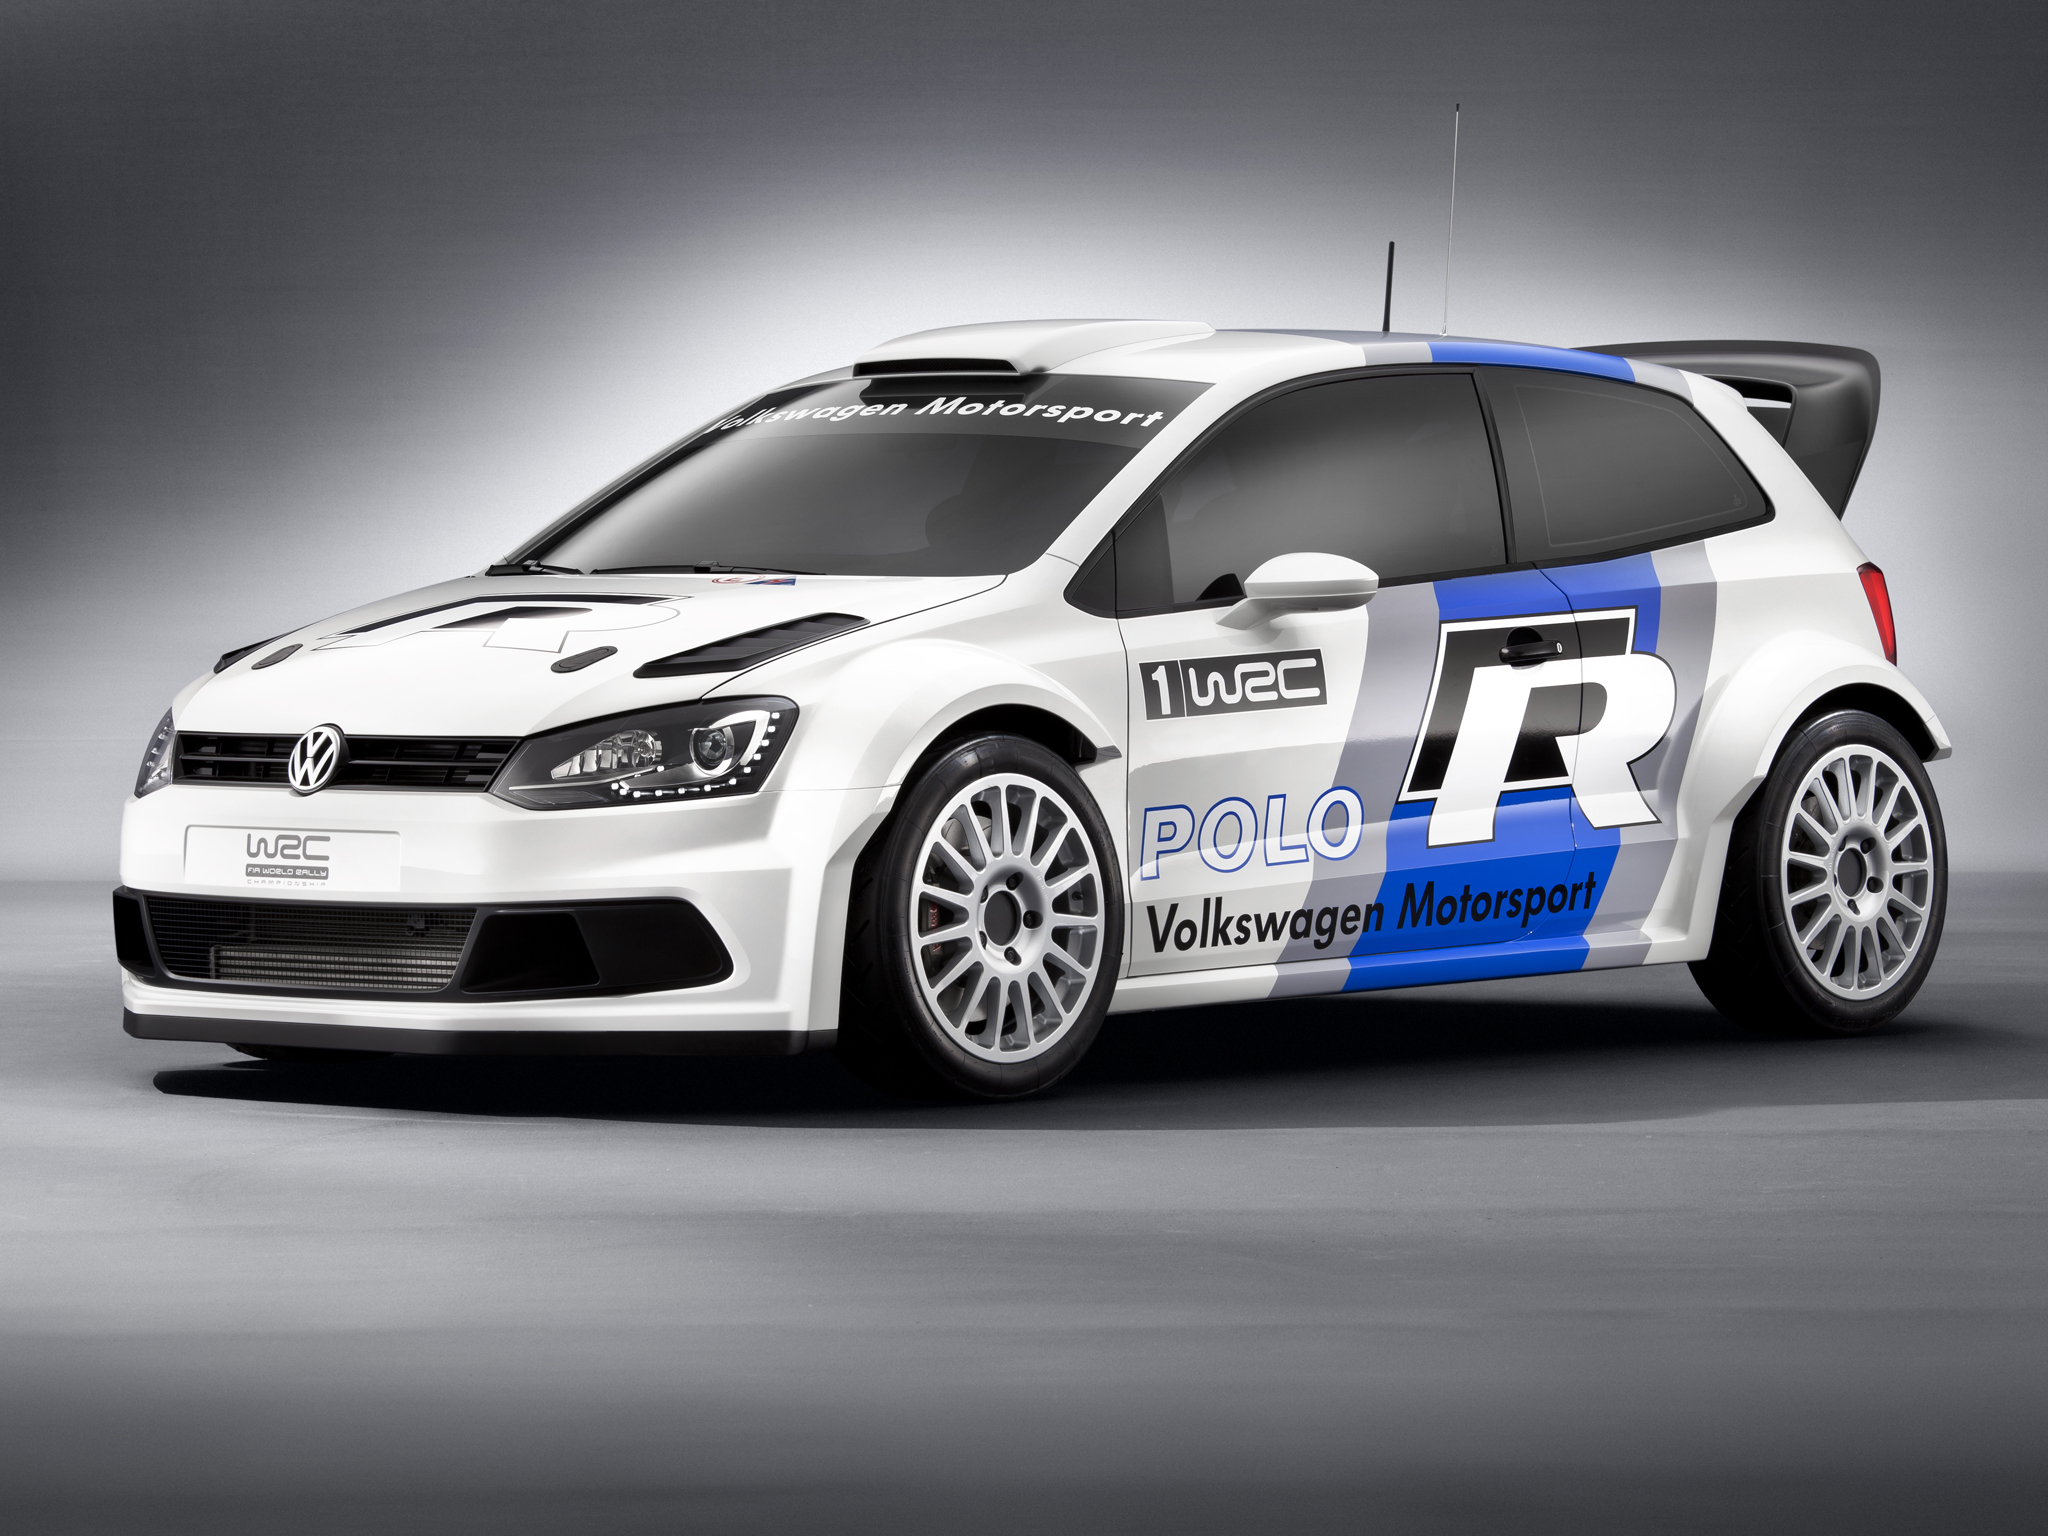 Free download wallpaper Racing, Vehicles, Wrc Racing on your PC desktop